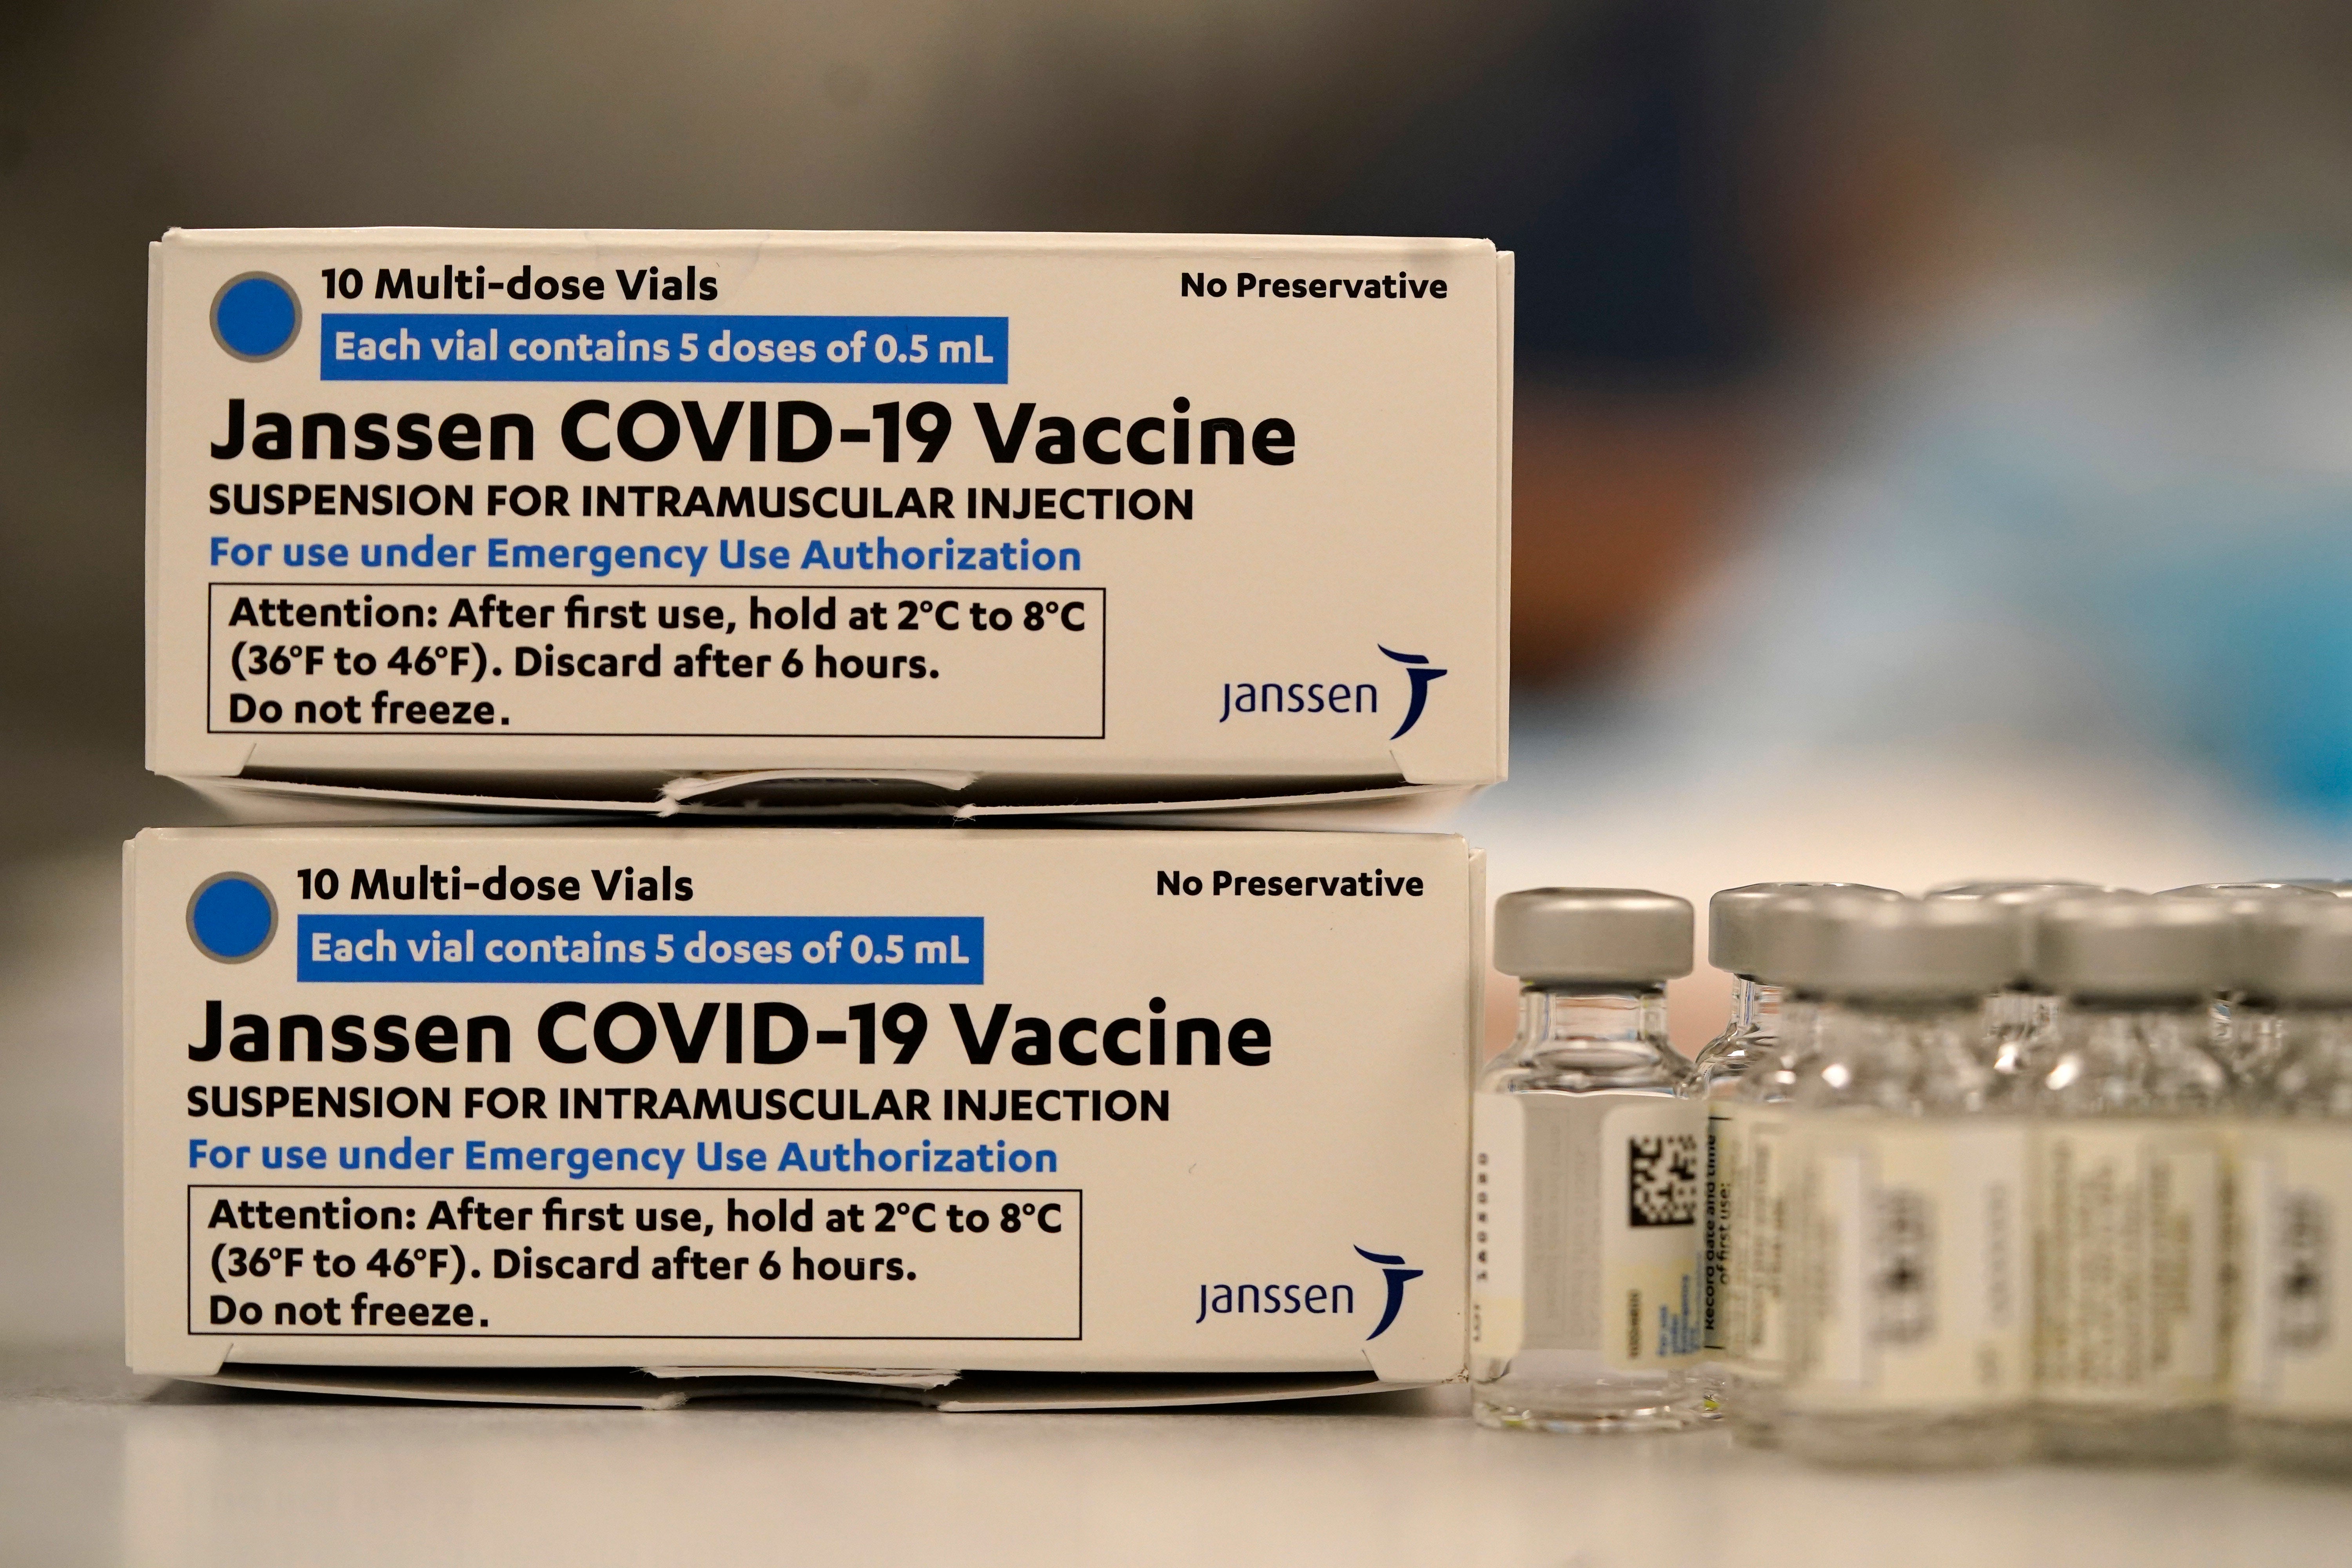 Вакцина на английском. Johnson Johnson вакцина от коронавируса. Вакцина Джонсон и Джонсон от коронавируса. Covid-19 vaccine Janssen. Вакцины j&j от Covid-19.